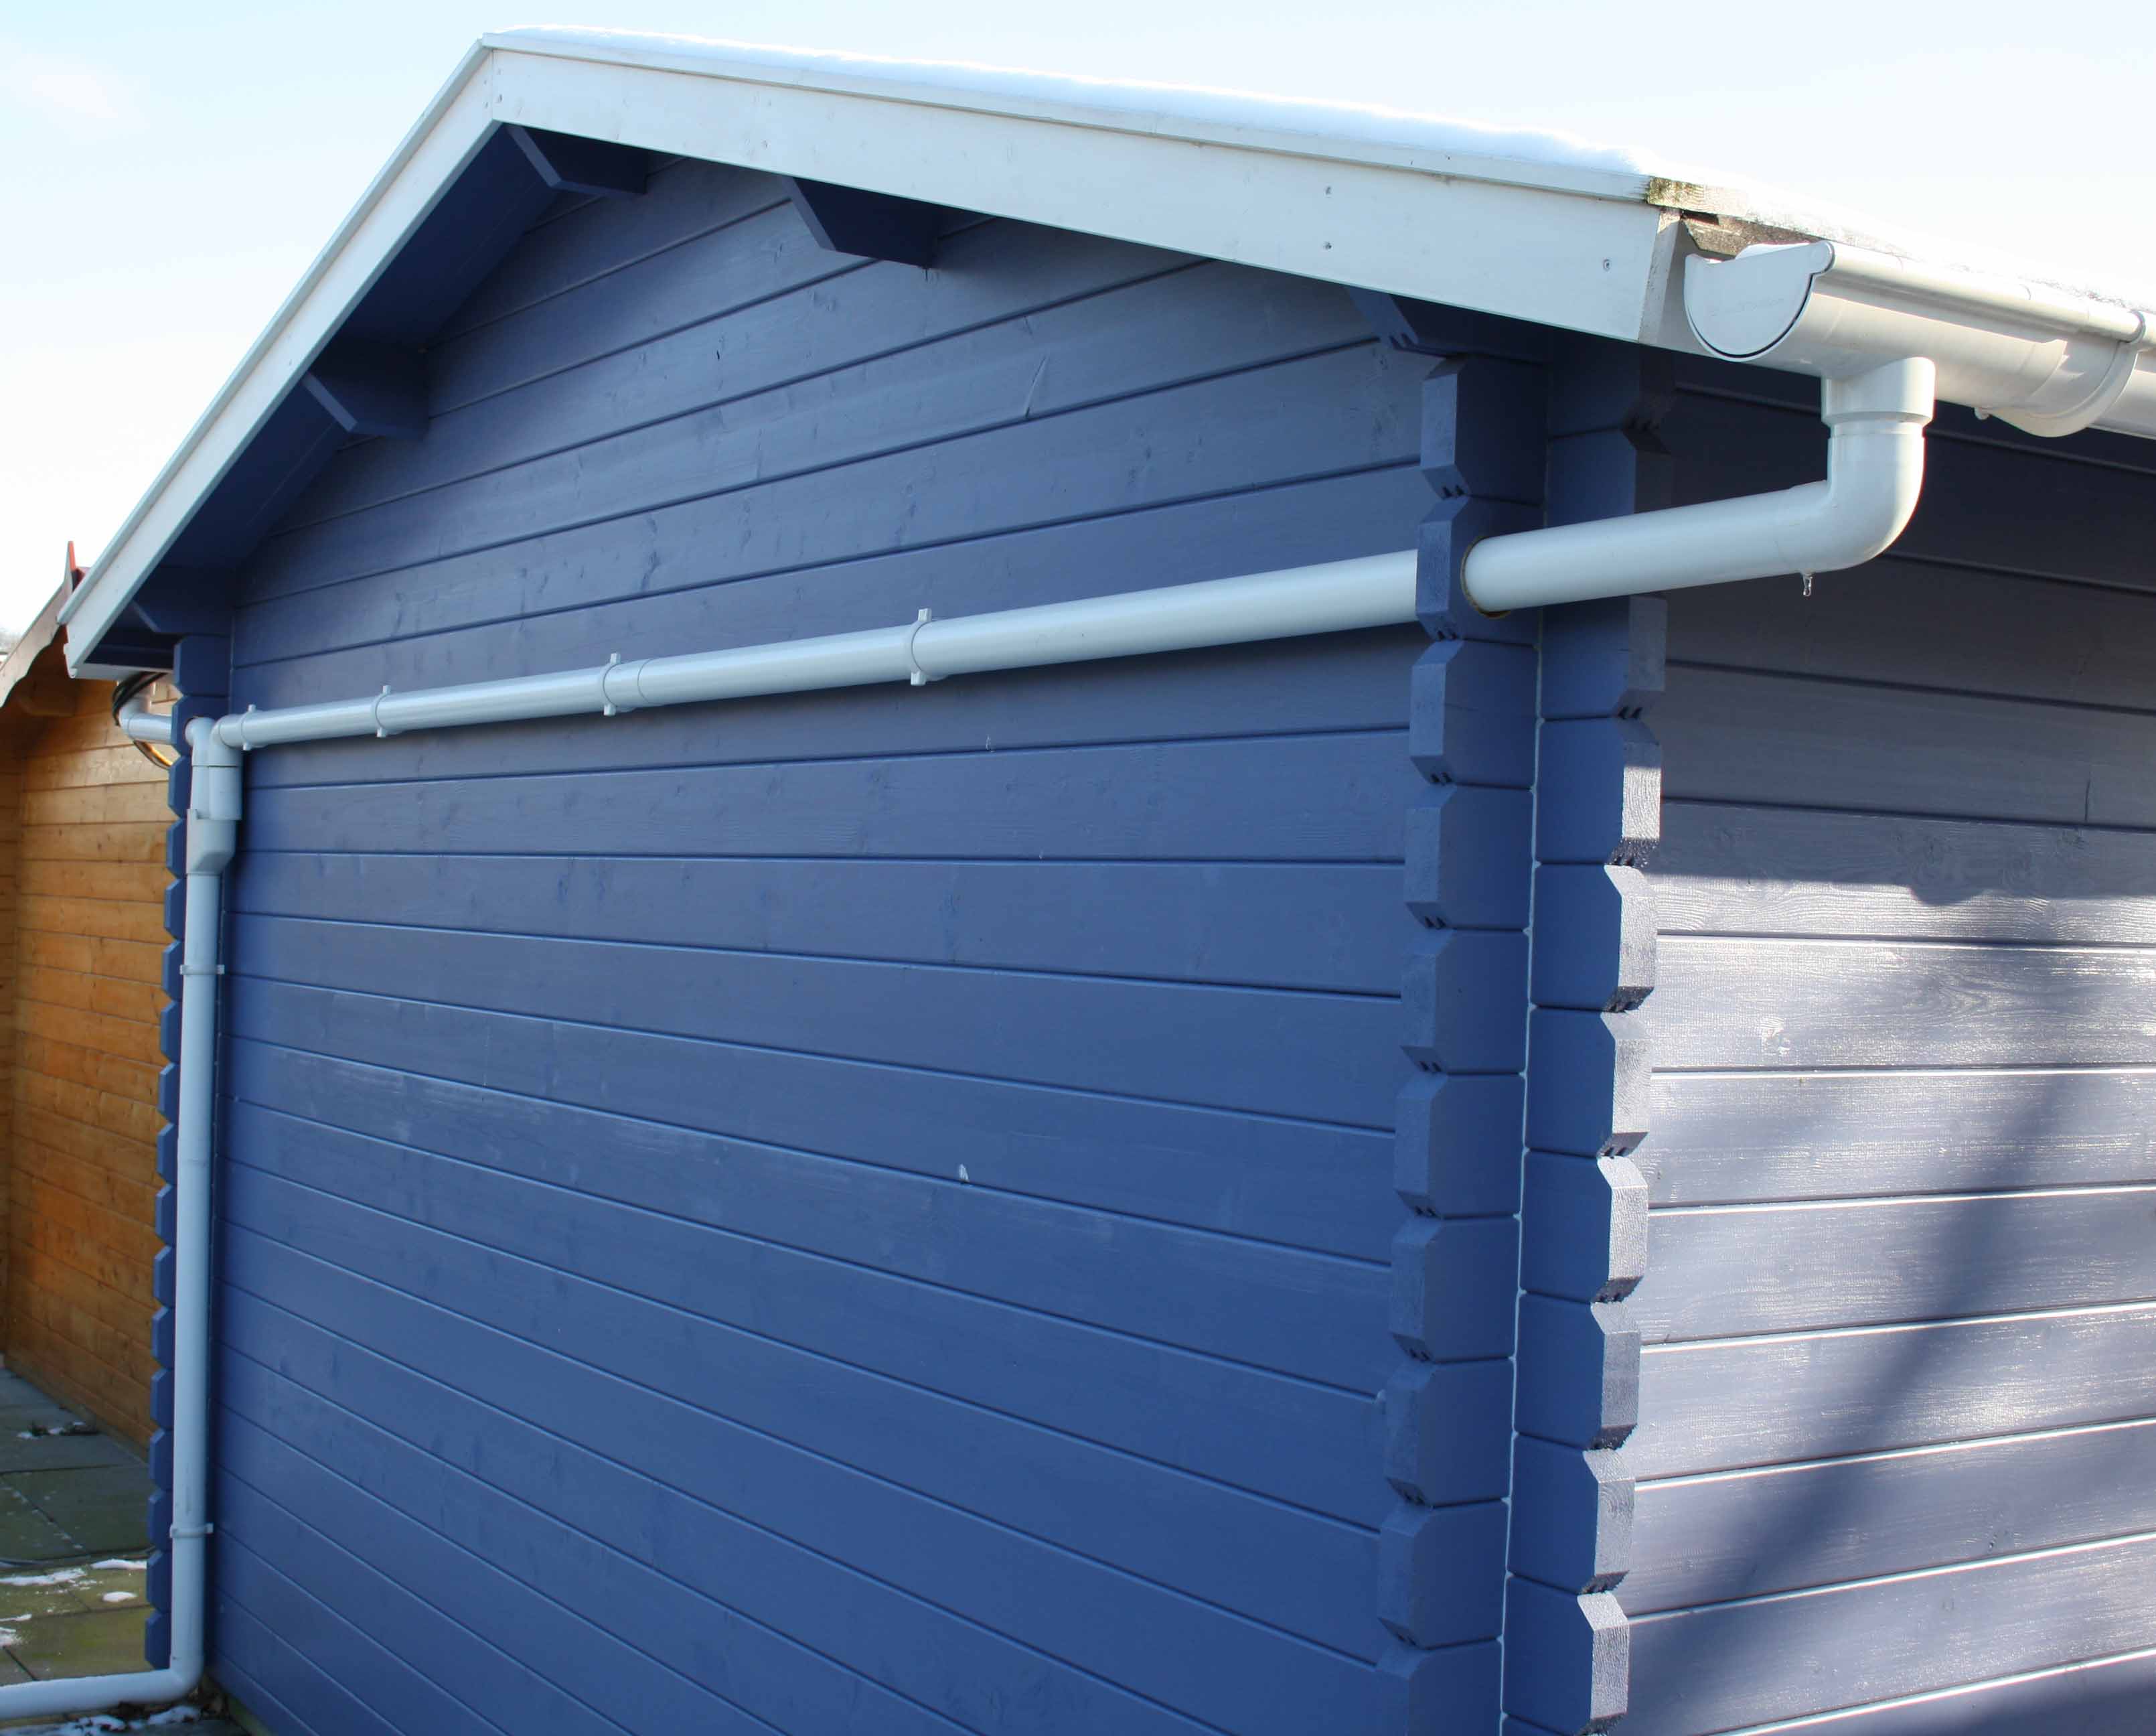 Kunststoff Dachrinnen Ergänzungsset für einseitige Entwässerung (Max. Abstand der Dachseiten: 400 cm)